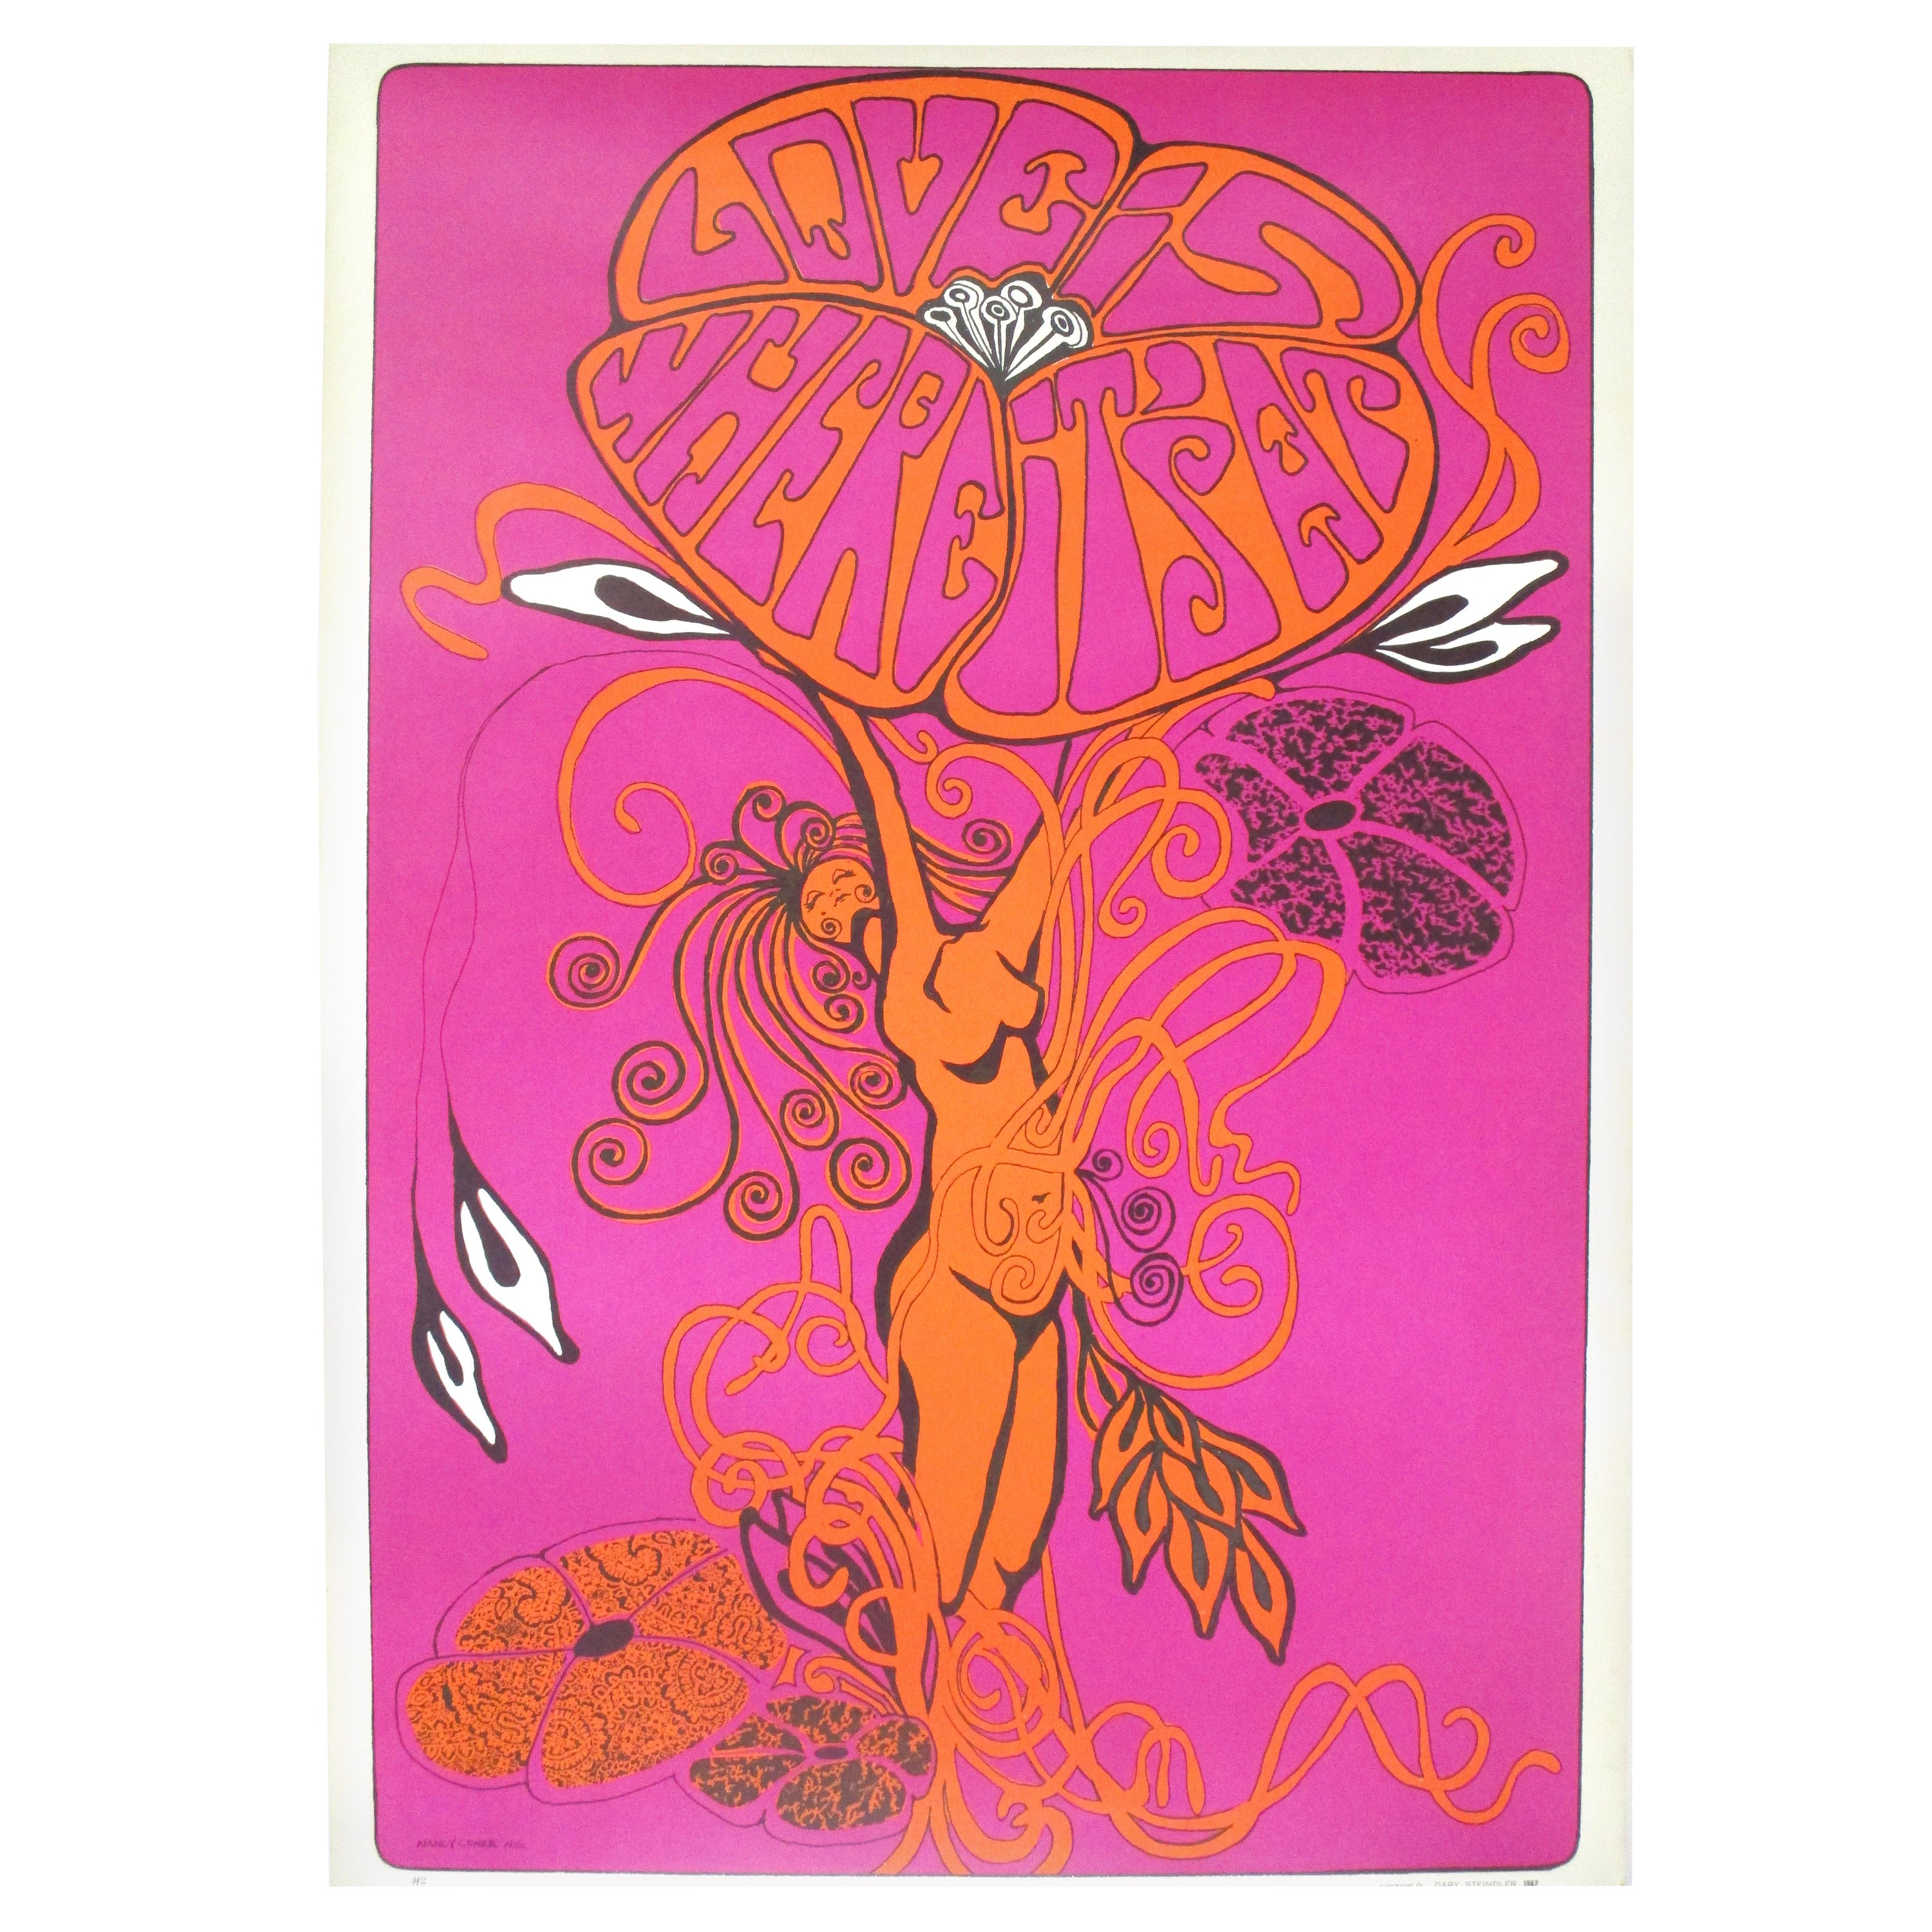 Psychedelisches Poster von Nancy Conner, 1967